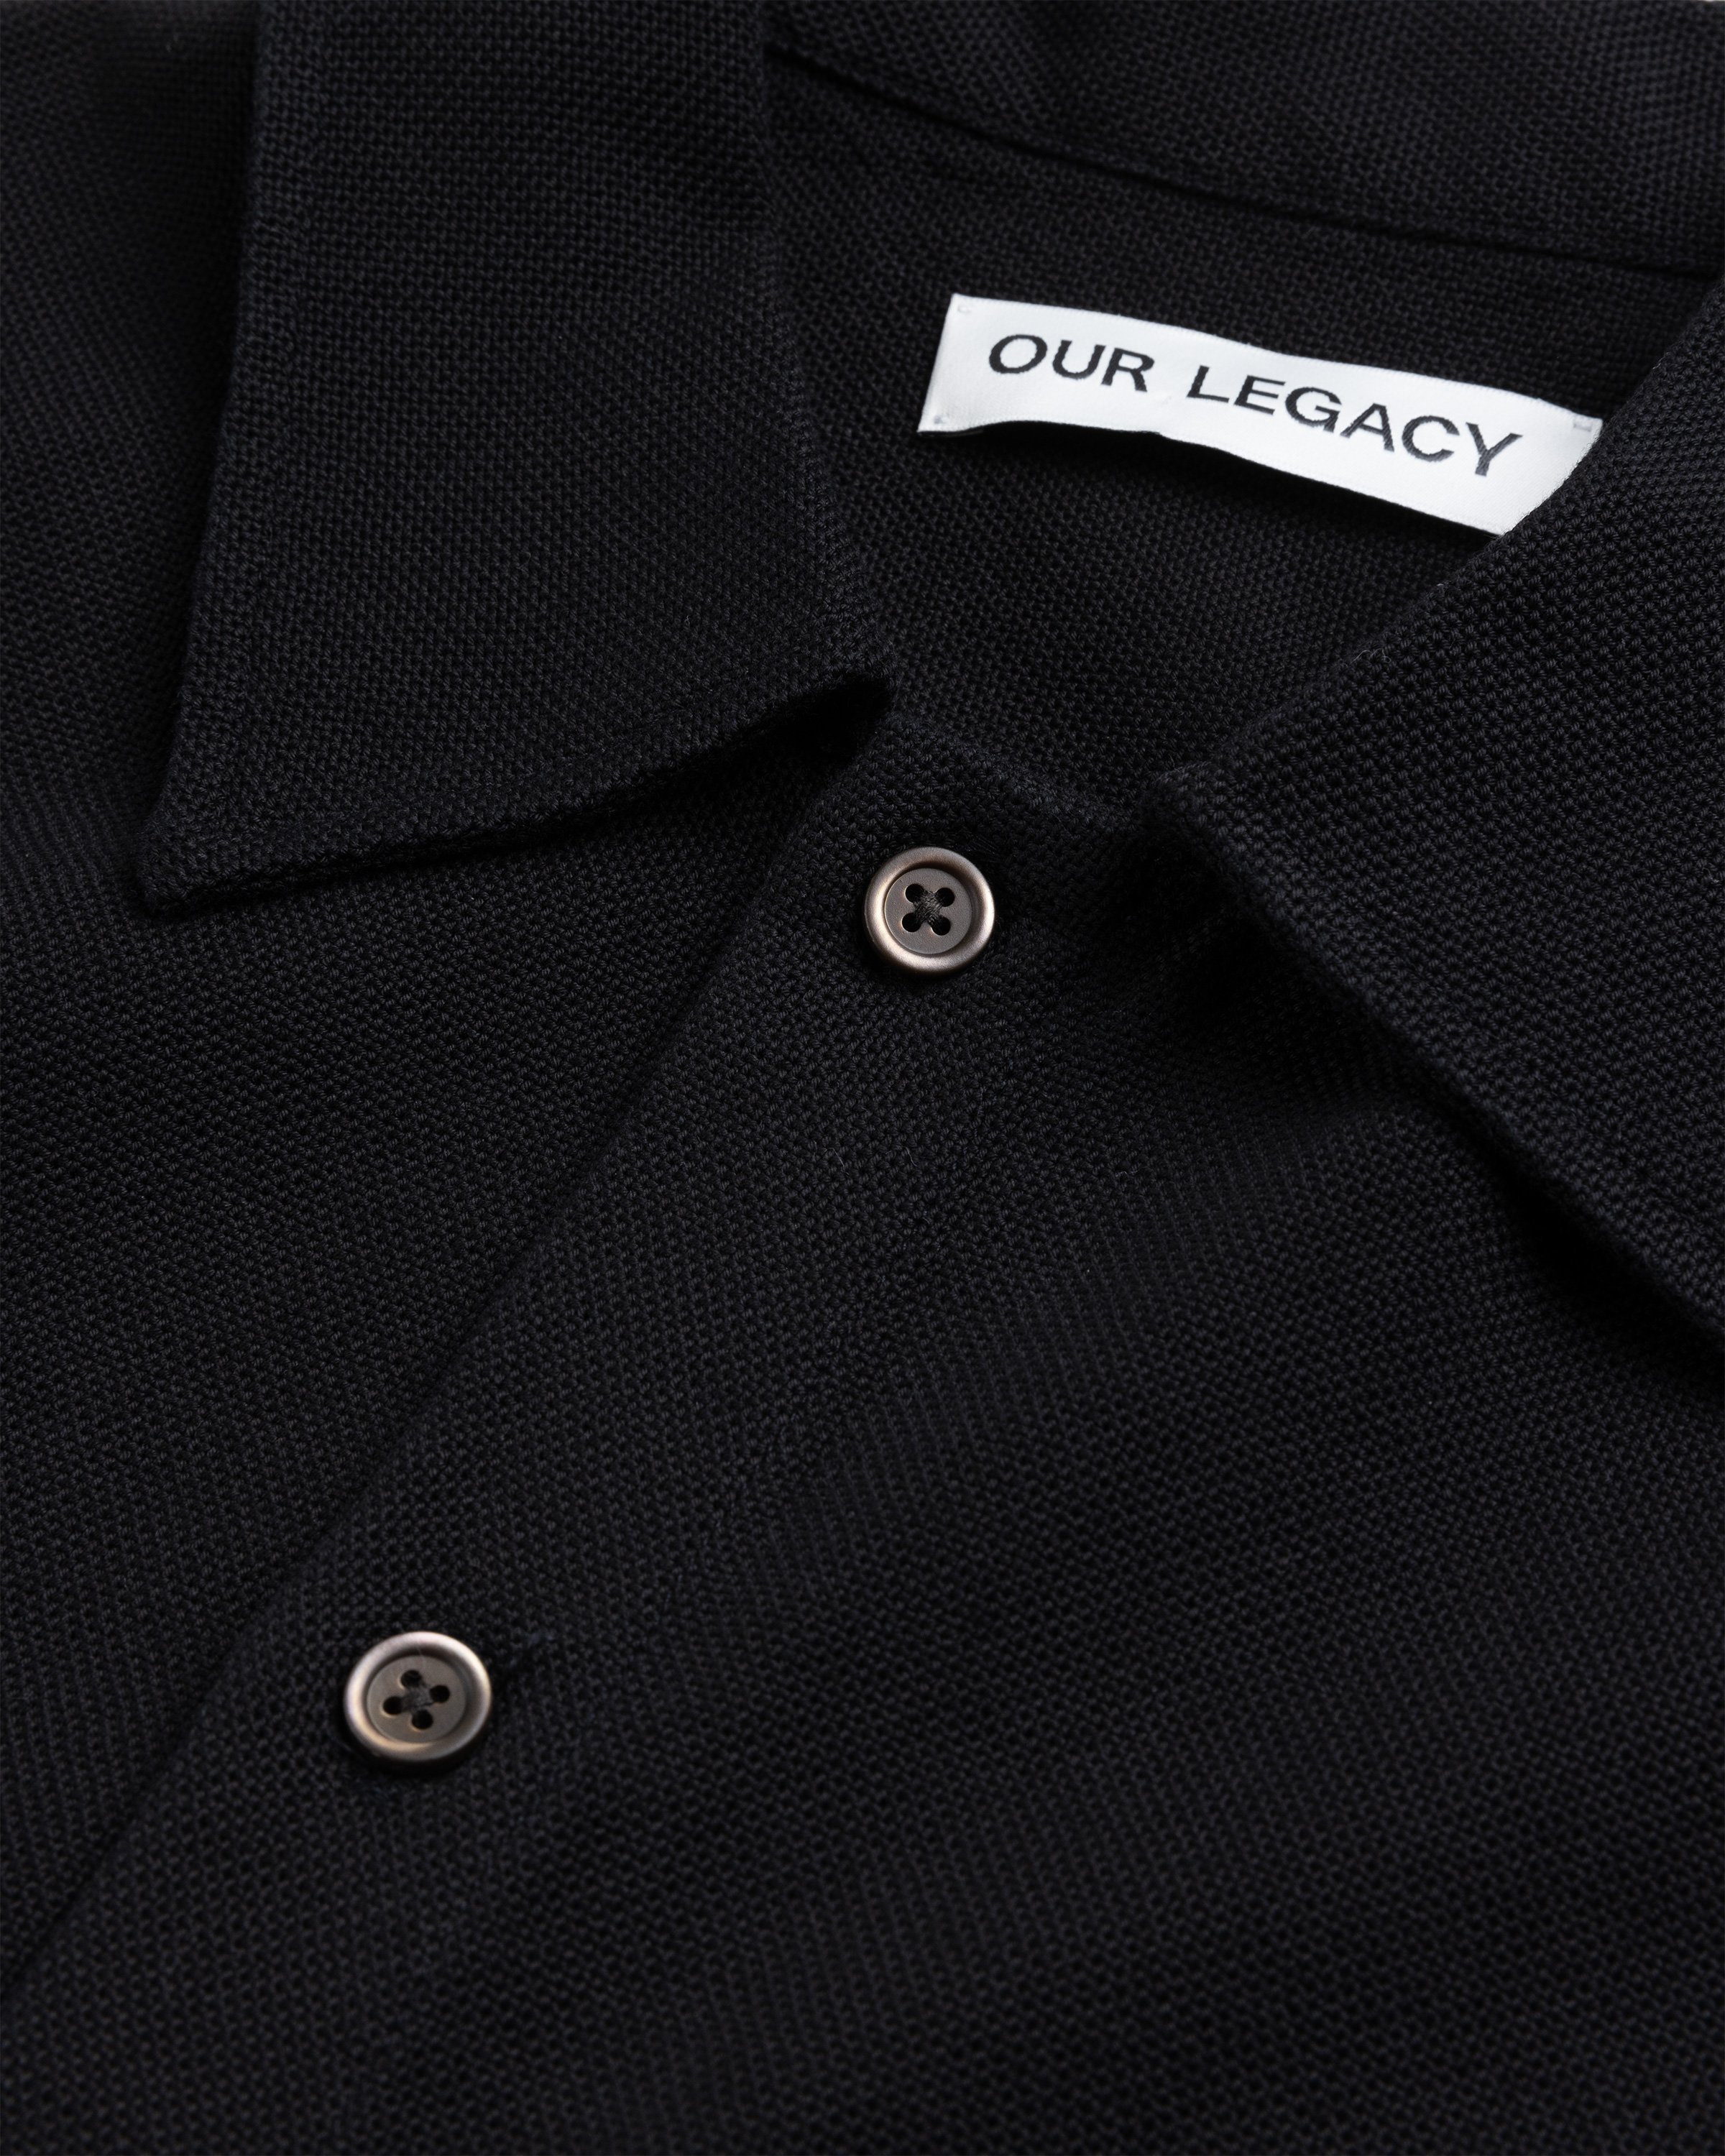 Our Legacy - Isola Shirt Black Sparse Panama Cotton - Clothing - Black - Image 5